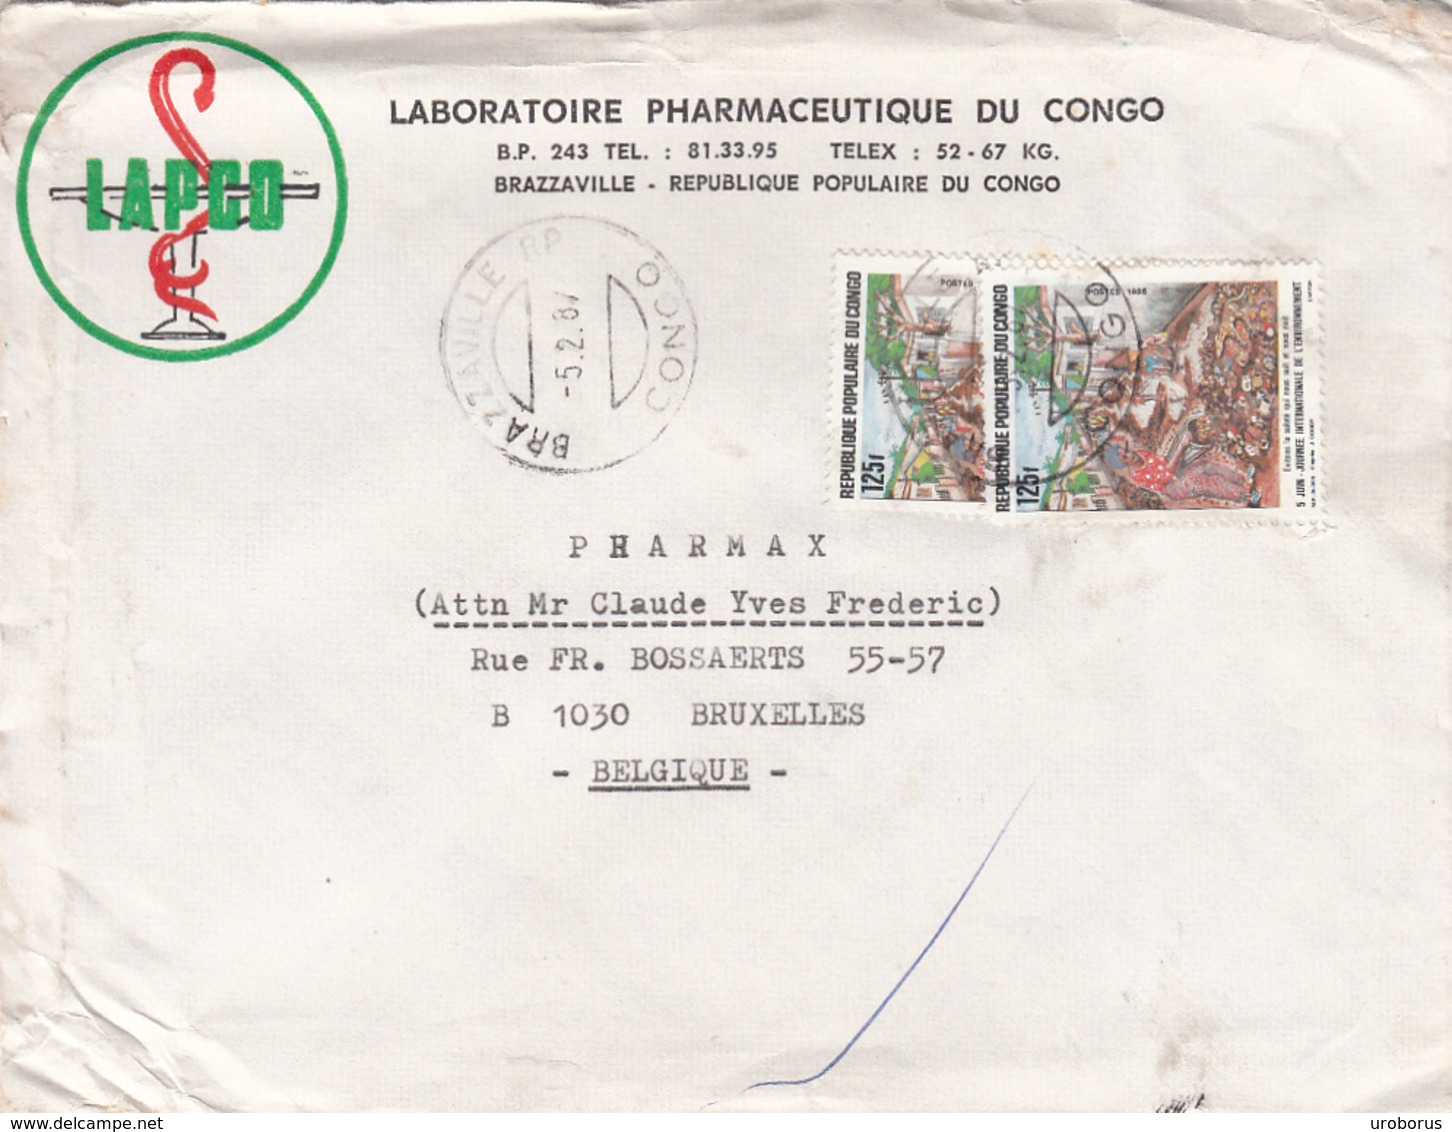 CONGO - Brazzavile 1987 - Laboratoire Pharmaceutique Du Congo Cover To Belgium - Y&T 775 X 2 - Oblitérés